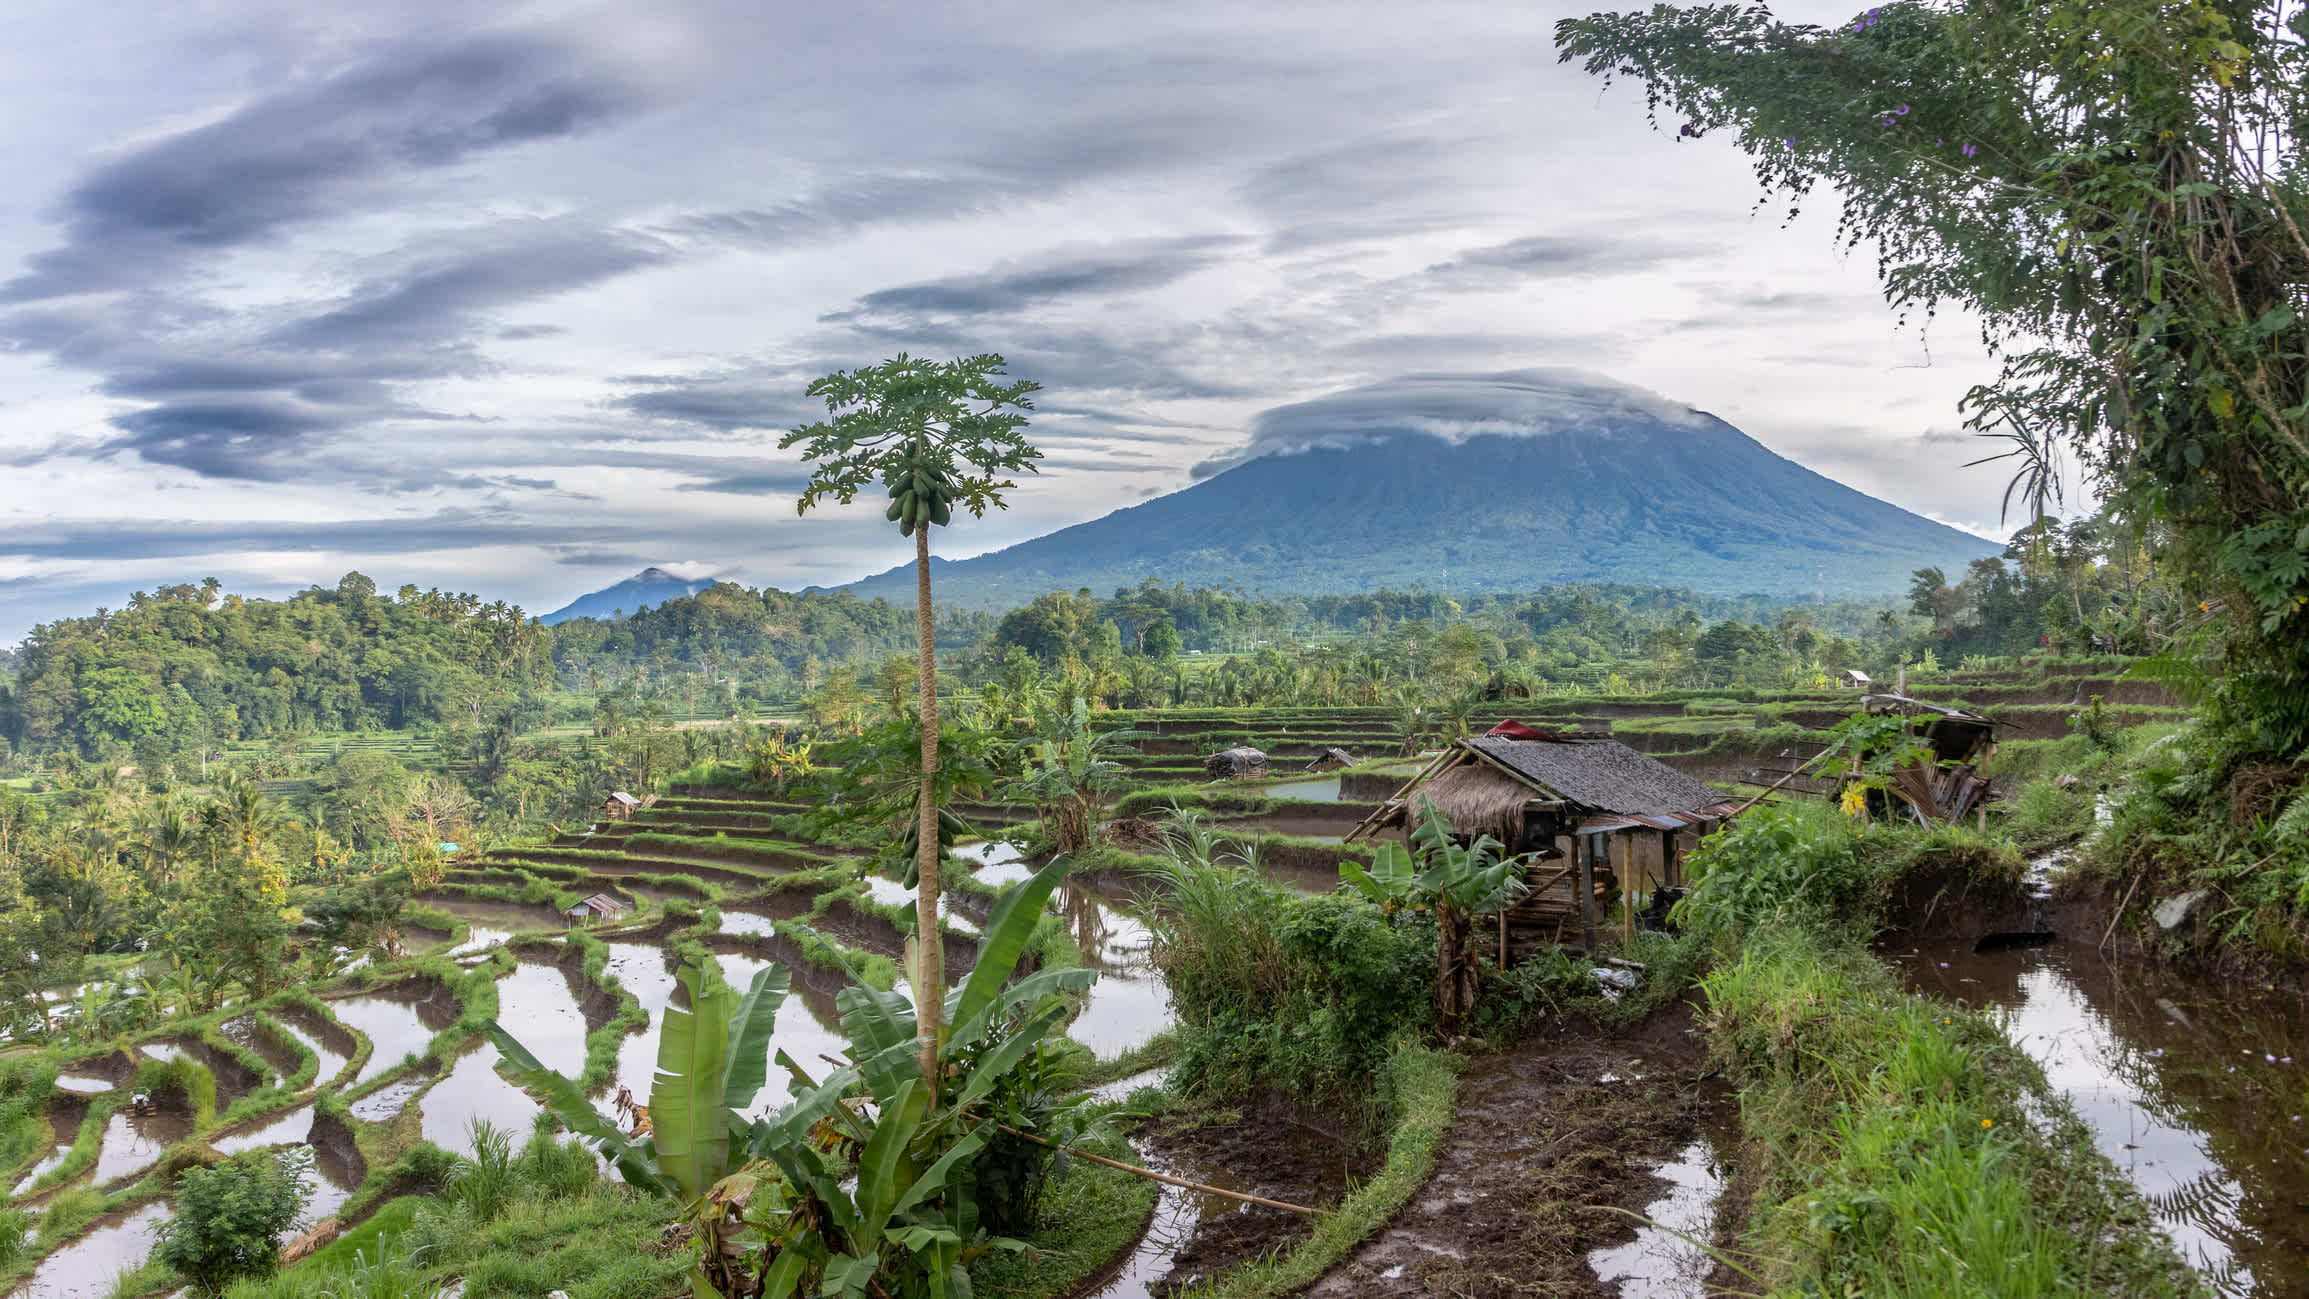  Reiseterrassen und Vulkan Agung im Dorf Sidemen, Bali, Indonesien.